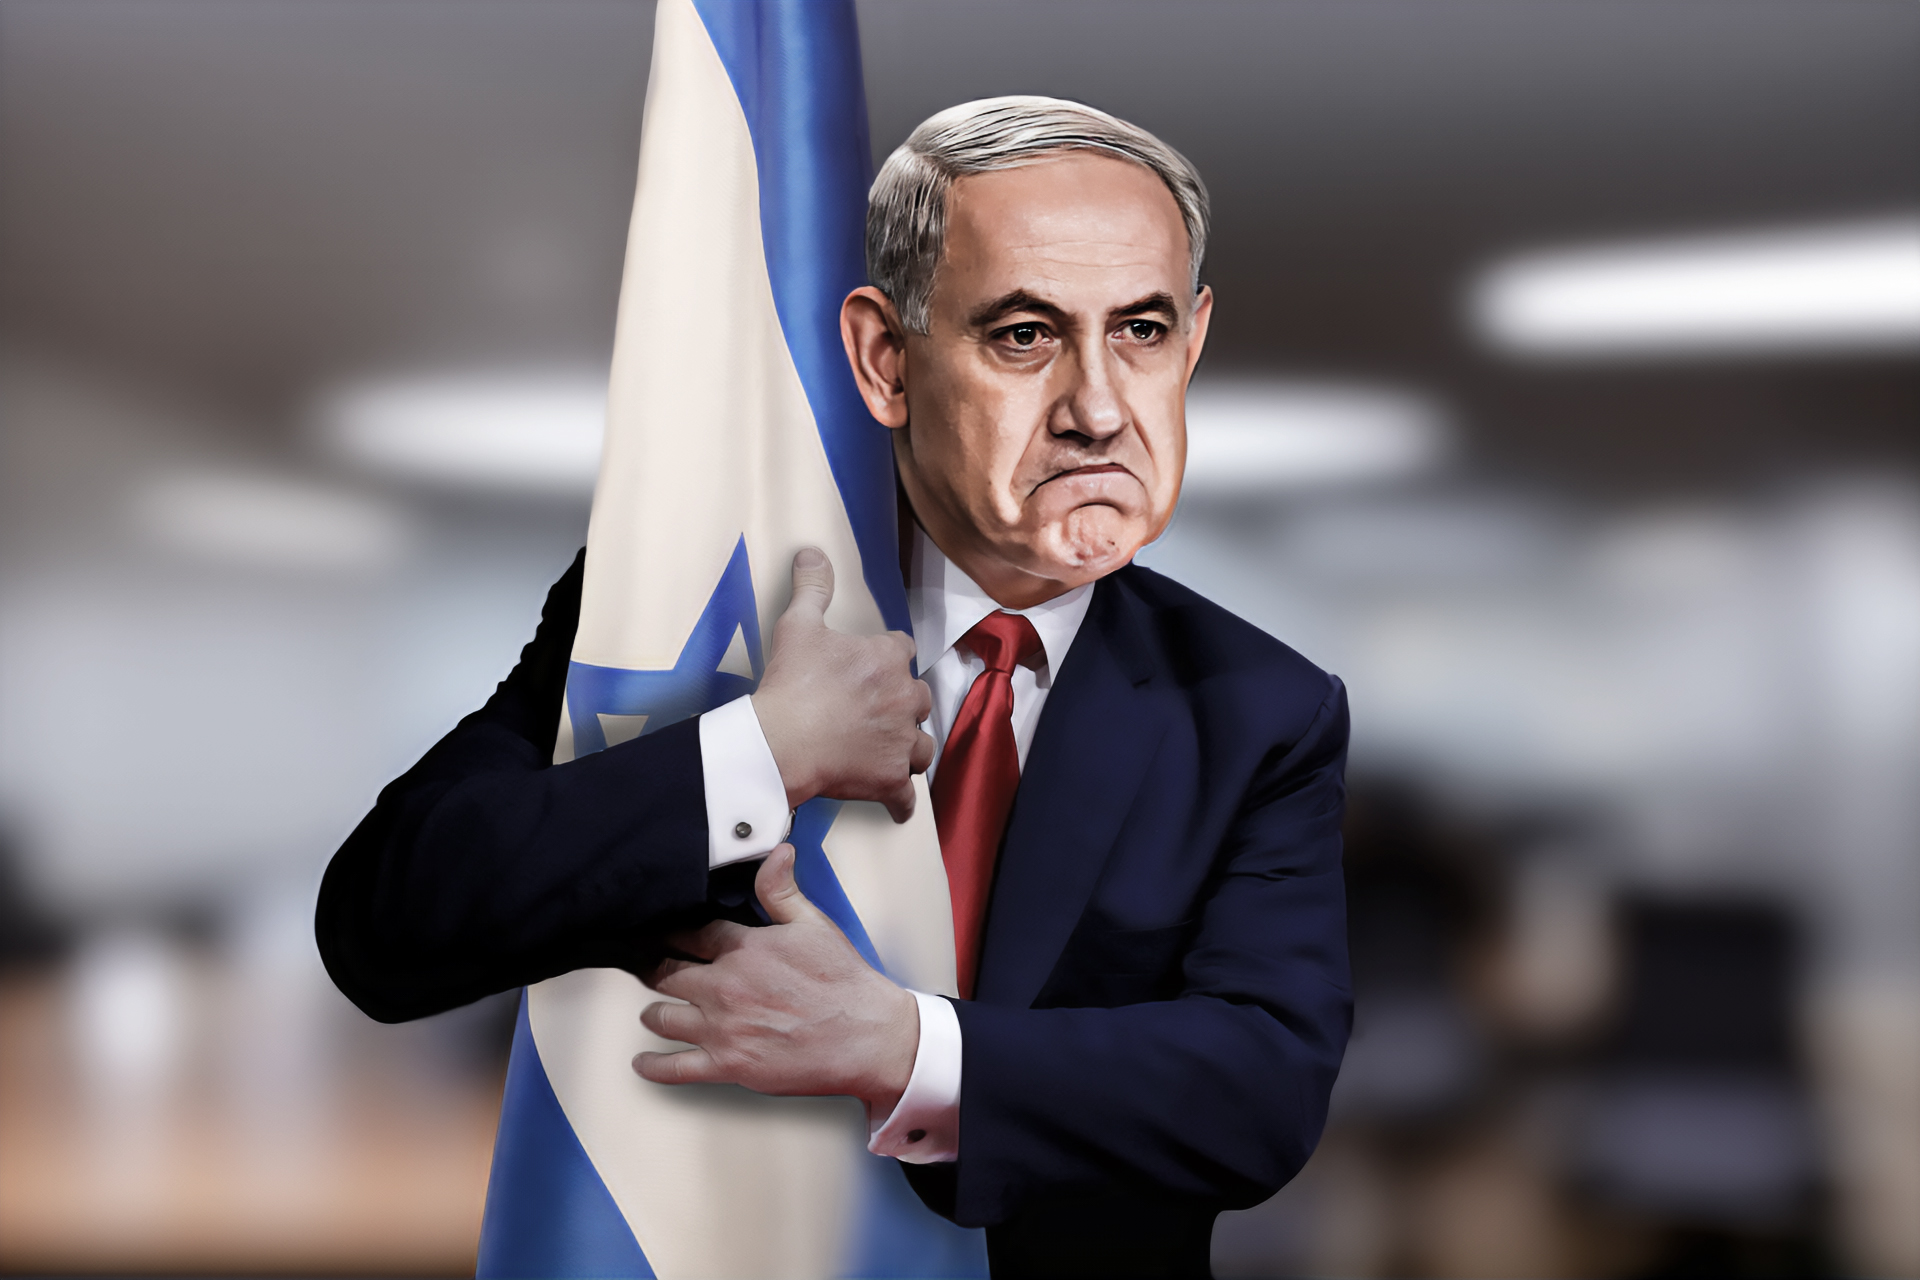 إسرائيل.. هل ينقطع حبل الناس عنها؟ | سياسة – البوكس نيوز